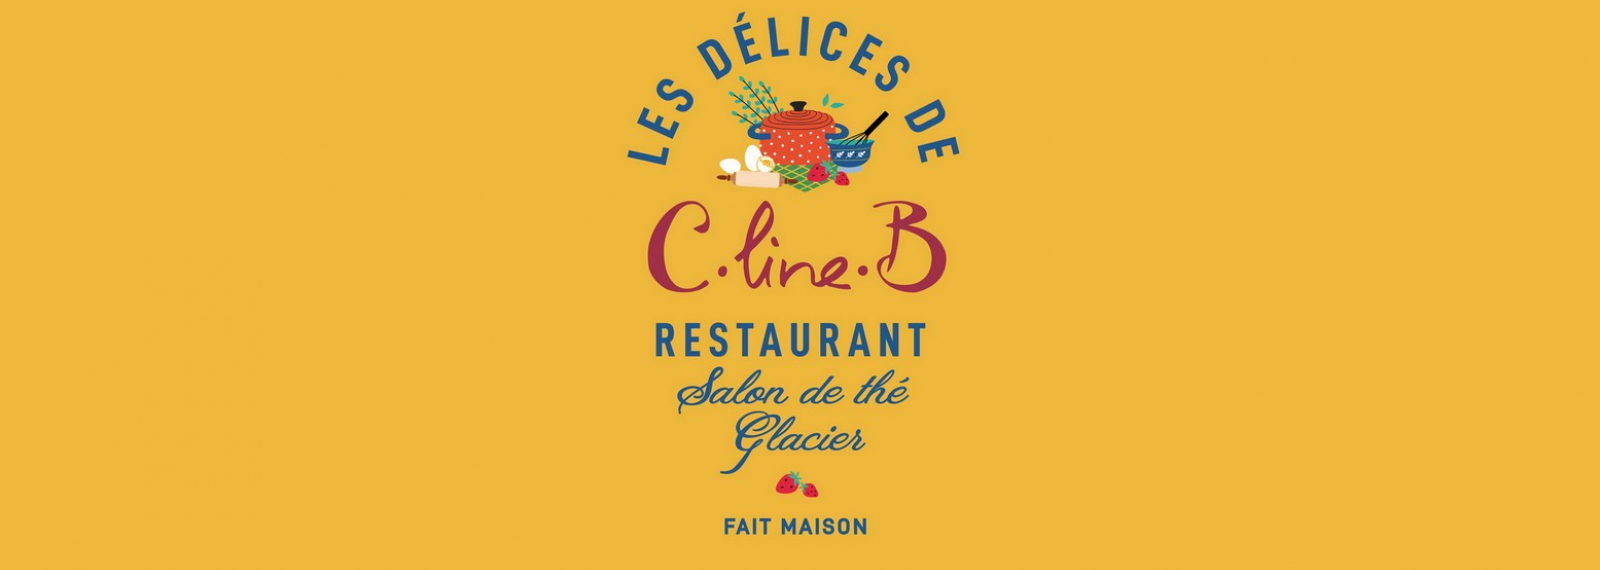 Restaurant Les Délices de C Line B à Saint-Rémy-de-Provence